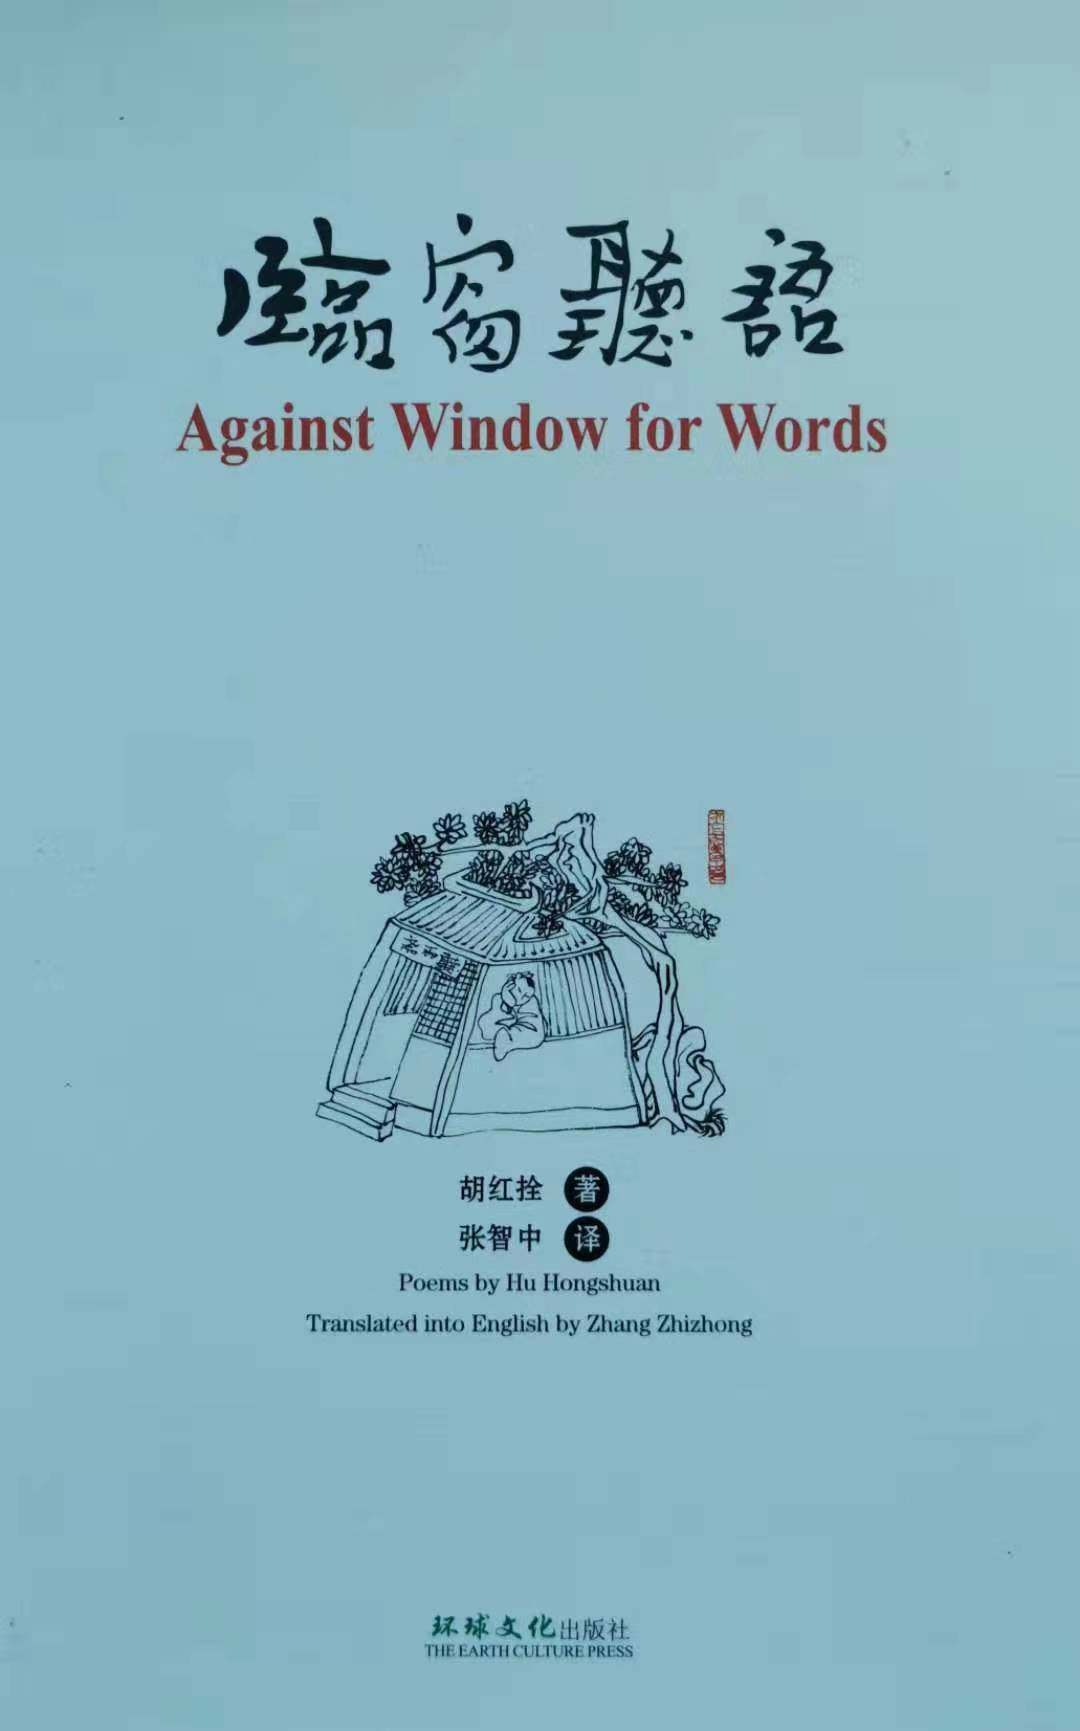 汉英对照诗集《临窗听语》由美国环球文化出版社隆重出版发行 